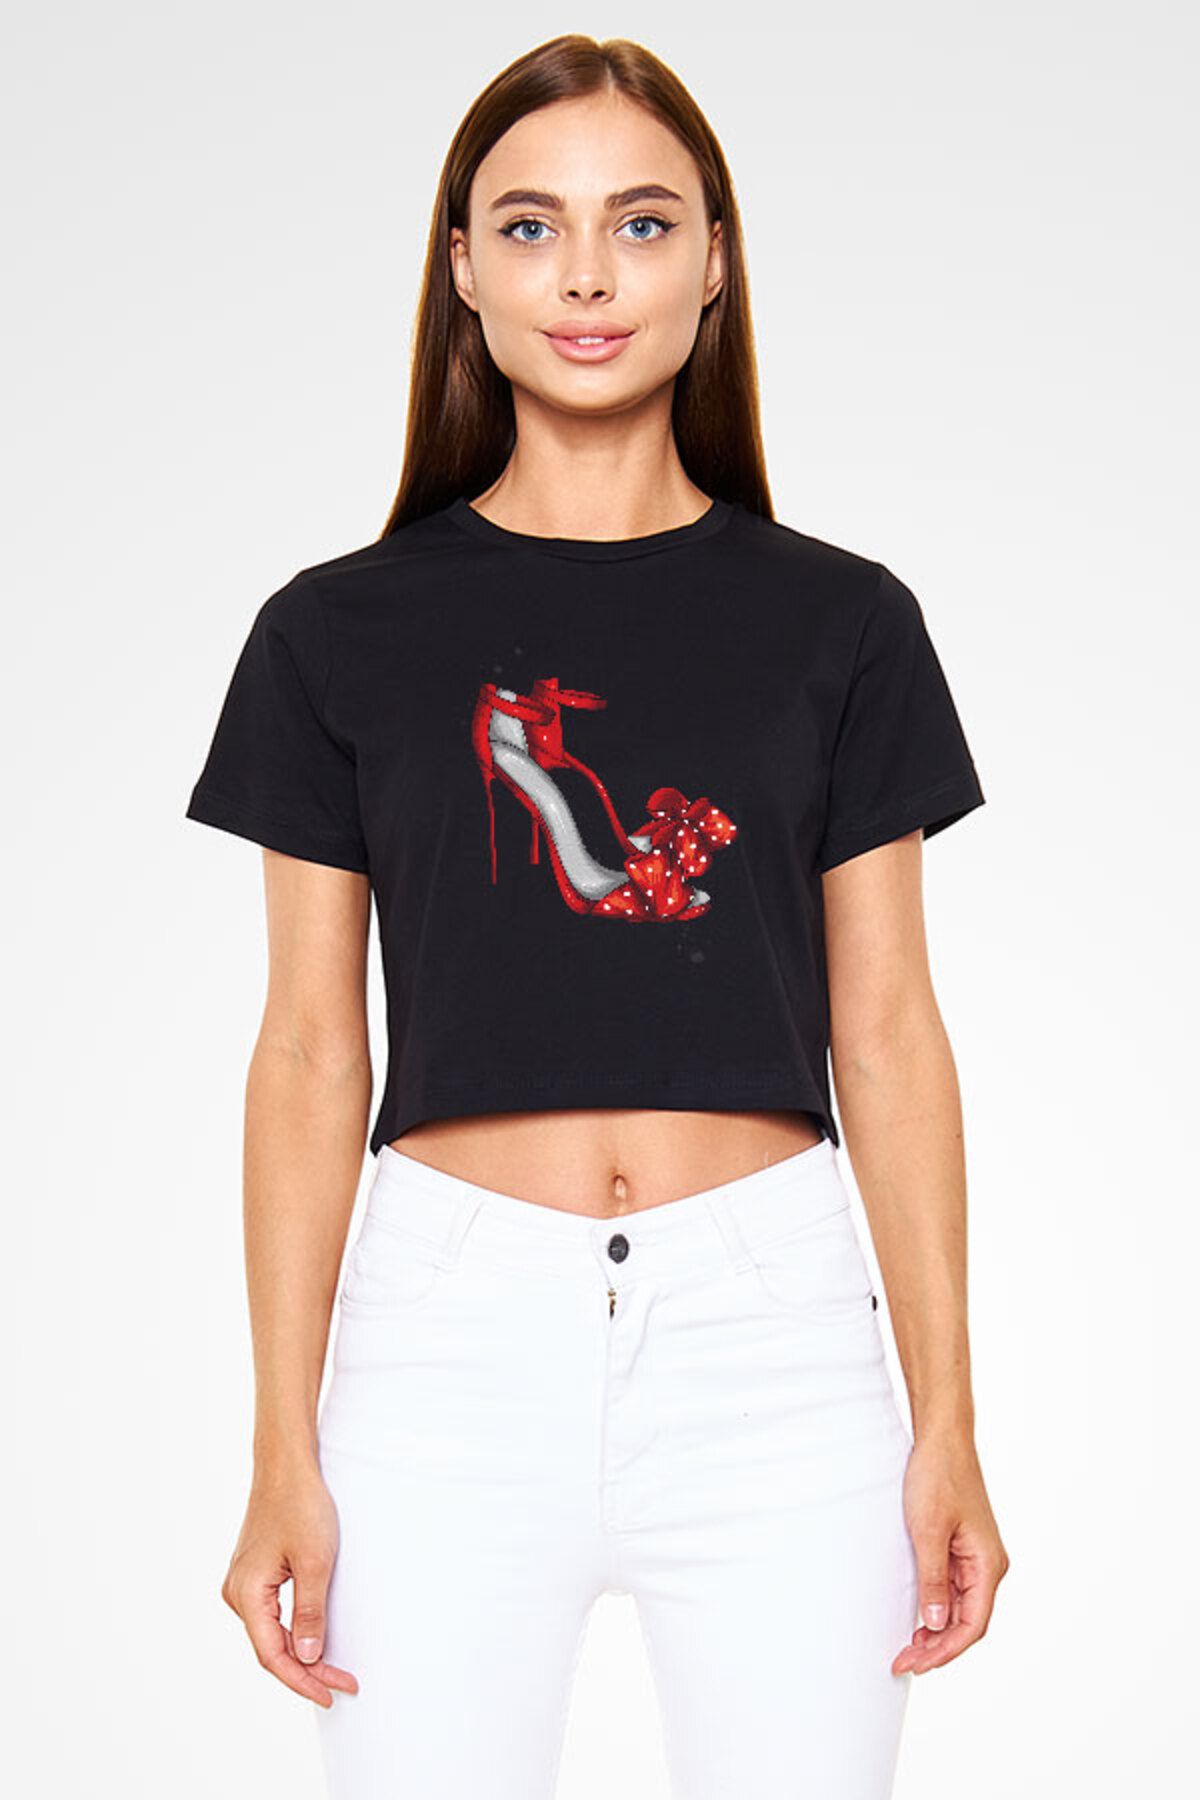 Darkhane Kırmızı Stiletto Tarzı Fashion Siyah Unisex Crop Top Tişört T-Shirt